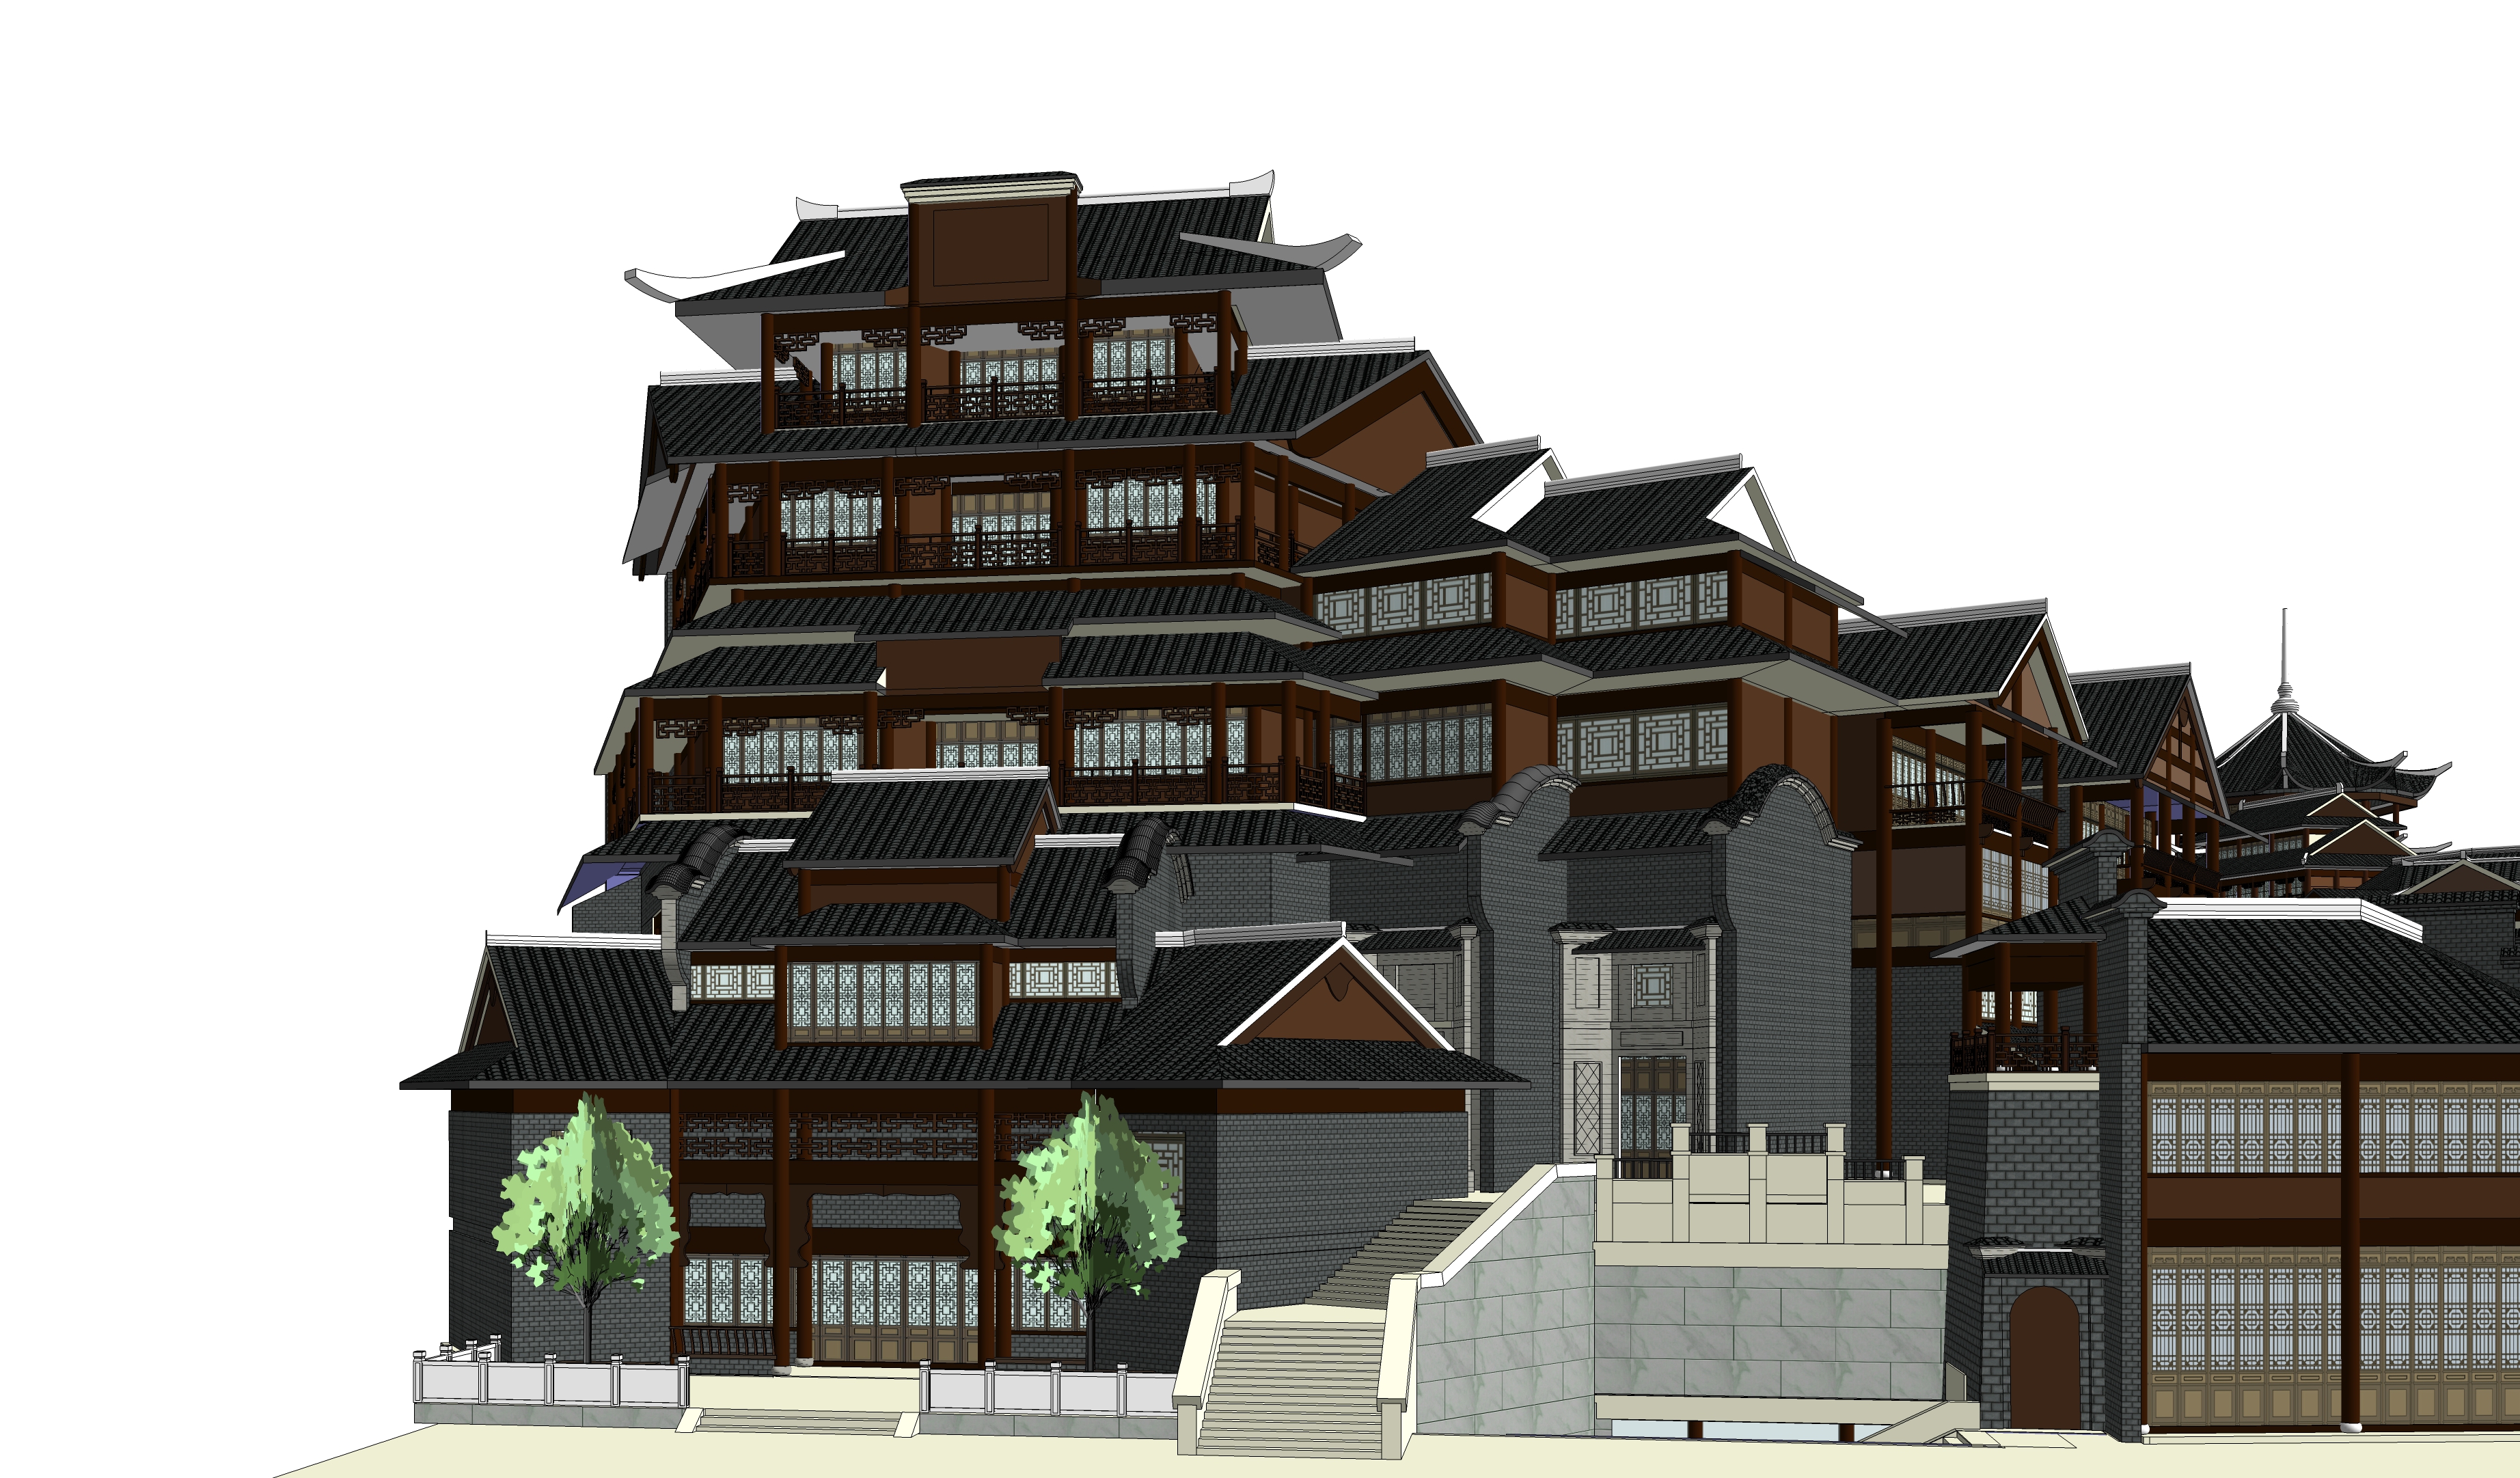 中式古城区古建筑设计方案sketchup模型